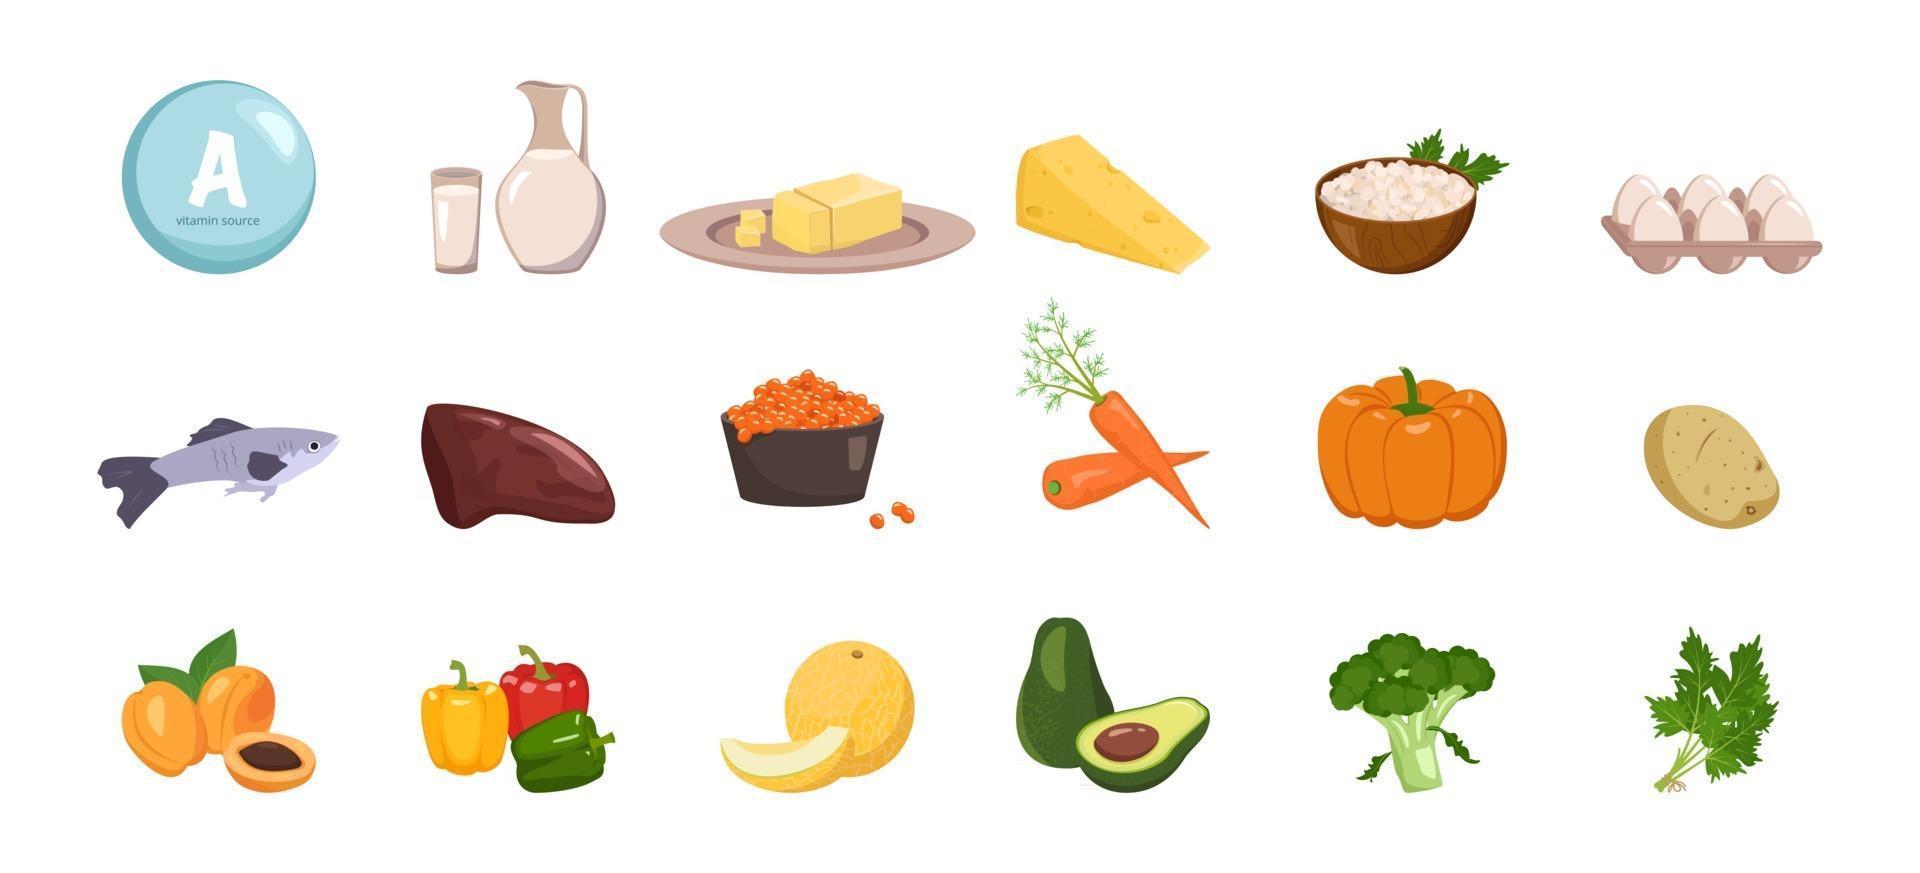 källa till vitamin a. uppsättning grönsaker, frukt och örter. dietmat vektor